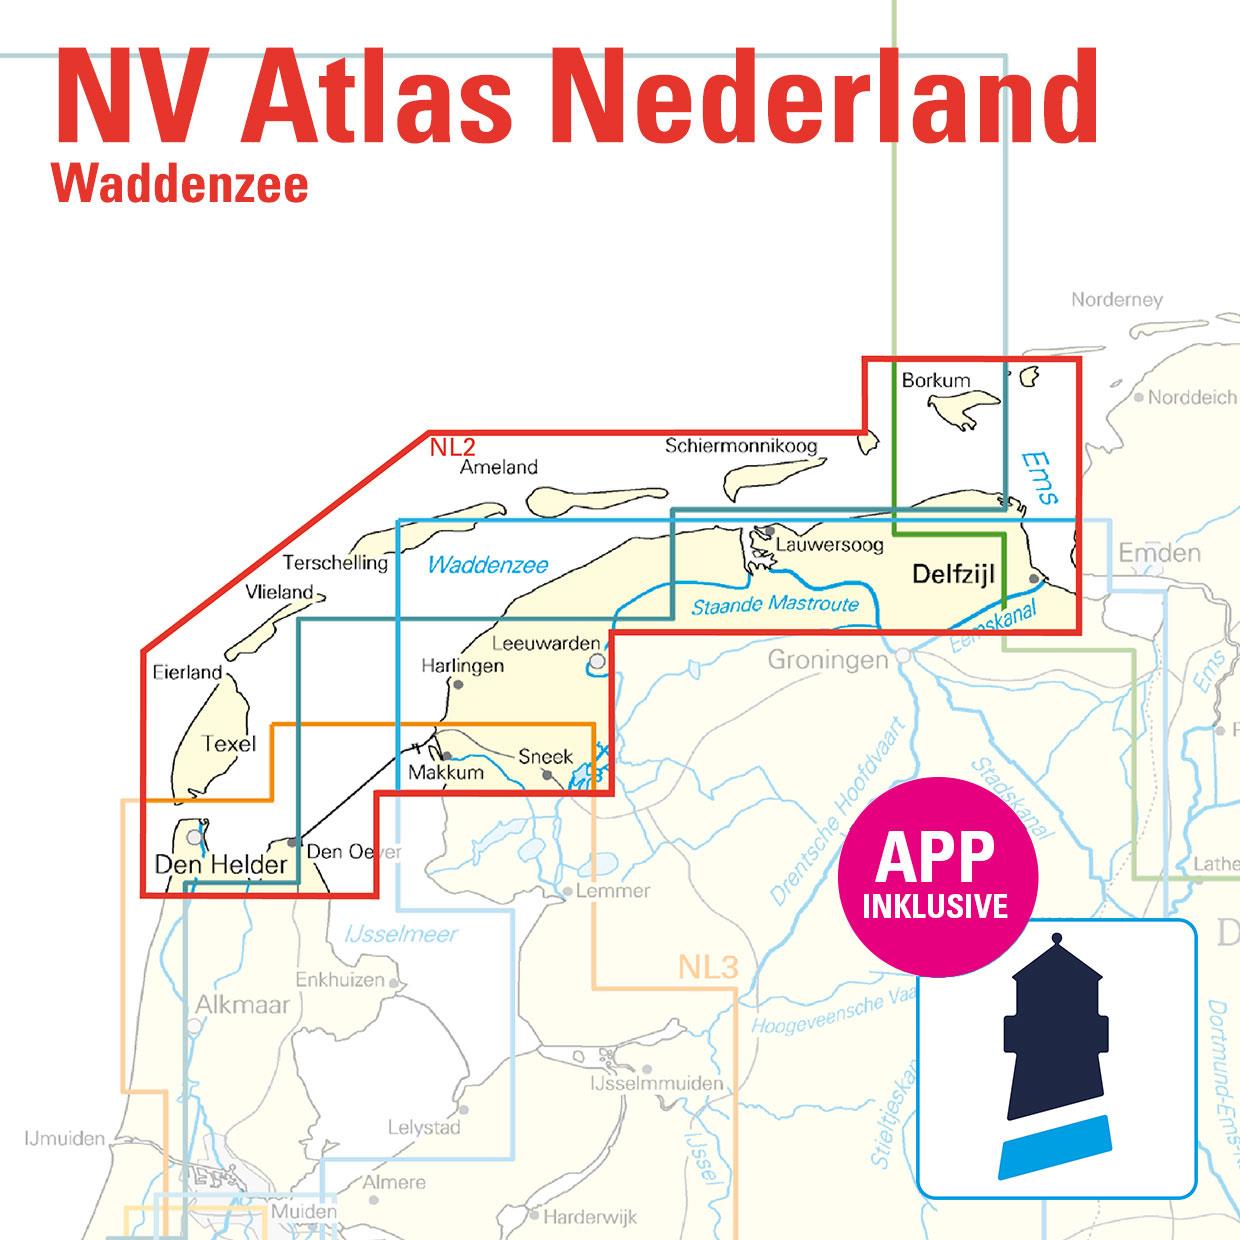 ABO - NV Charts Nederland NL2 - Waddenzee